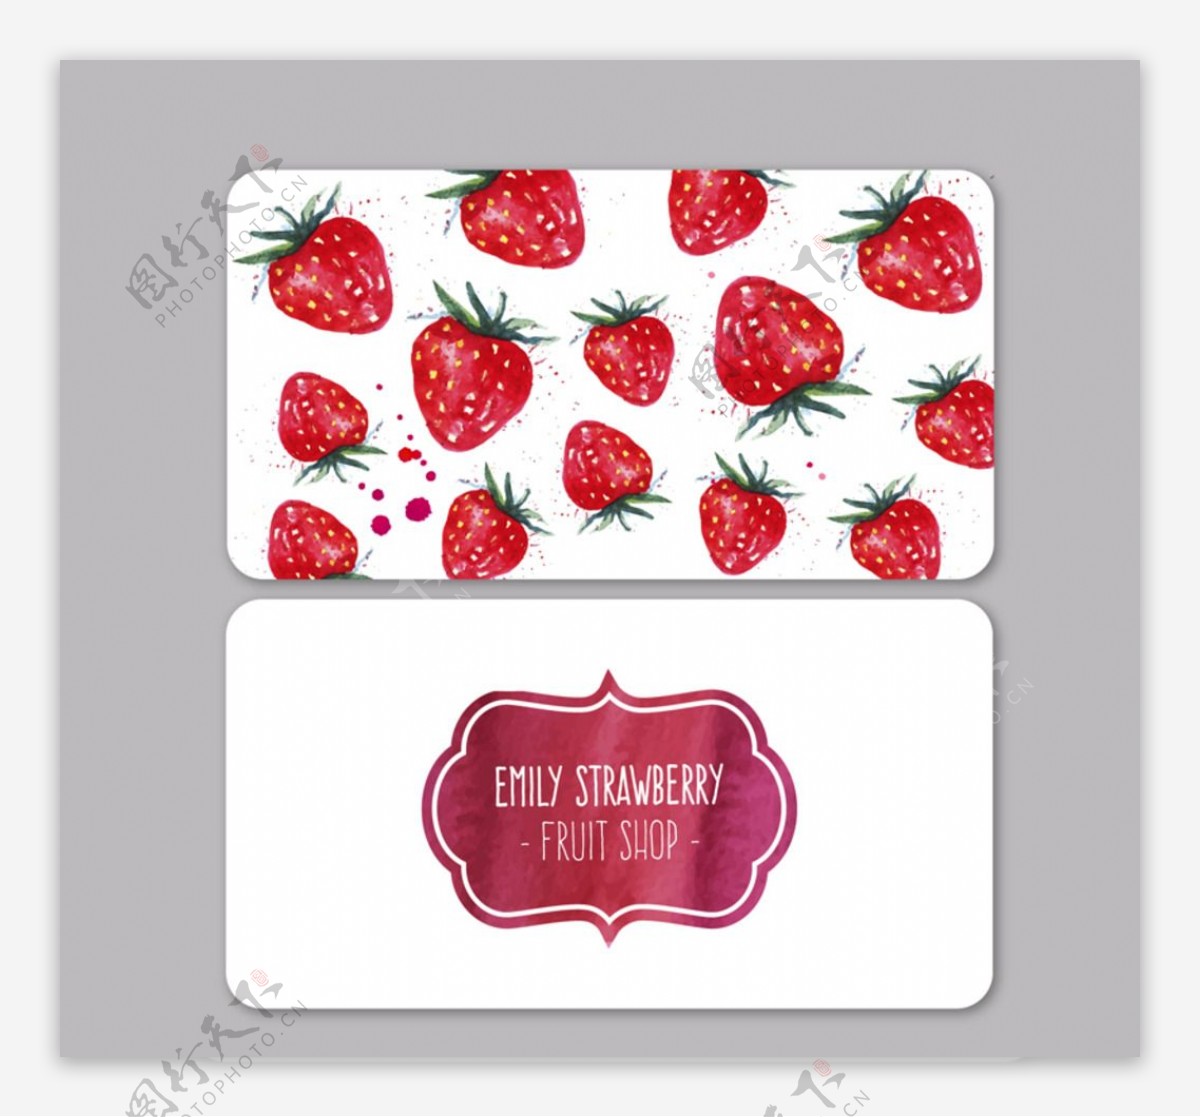 草莓水果店名片